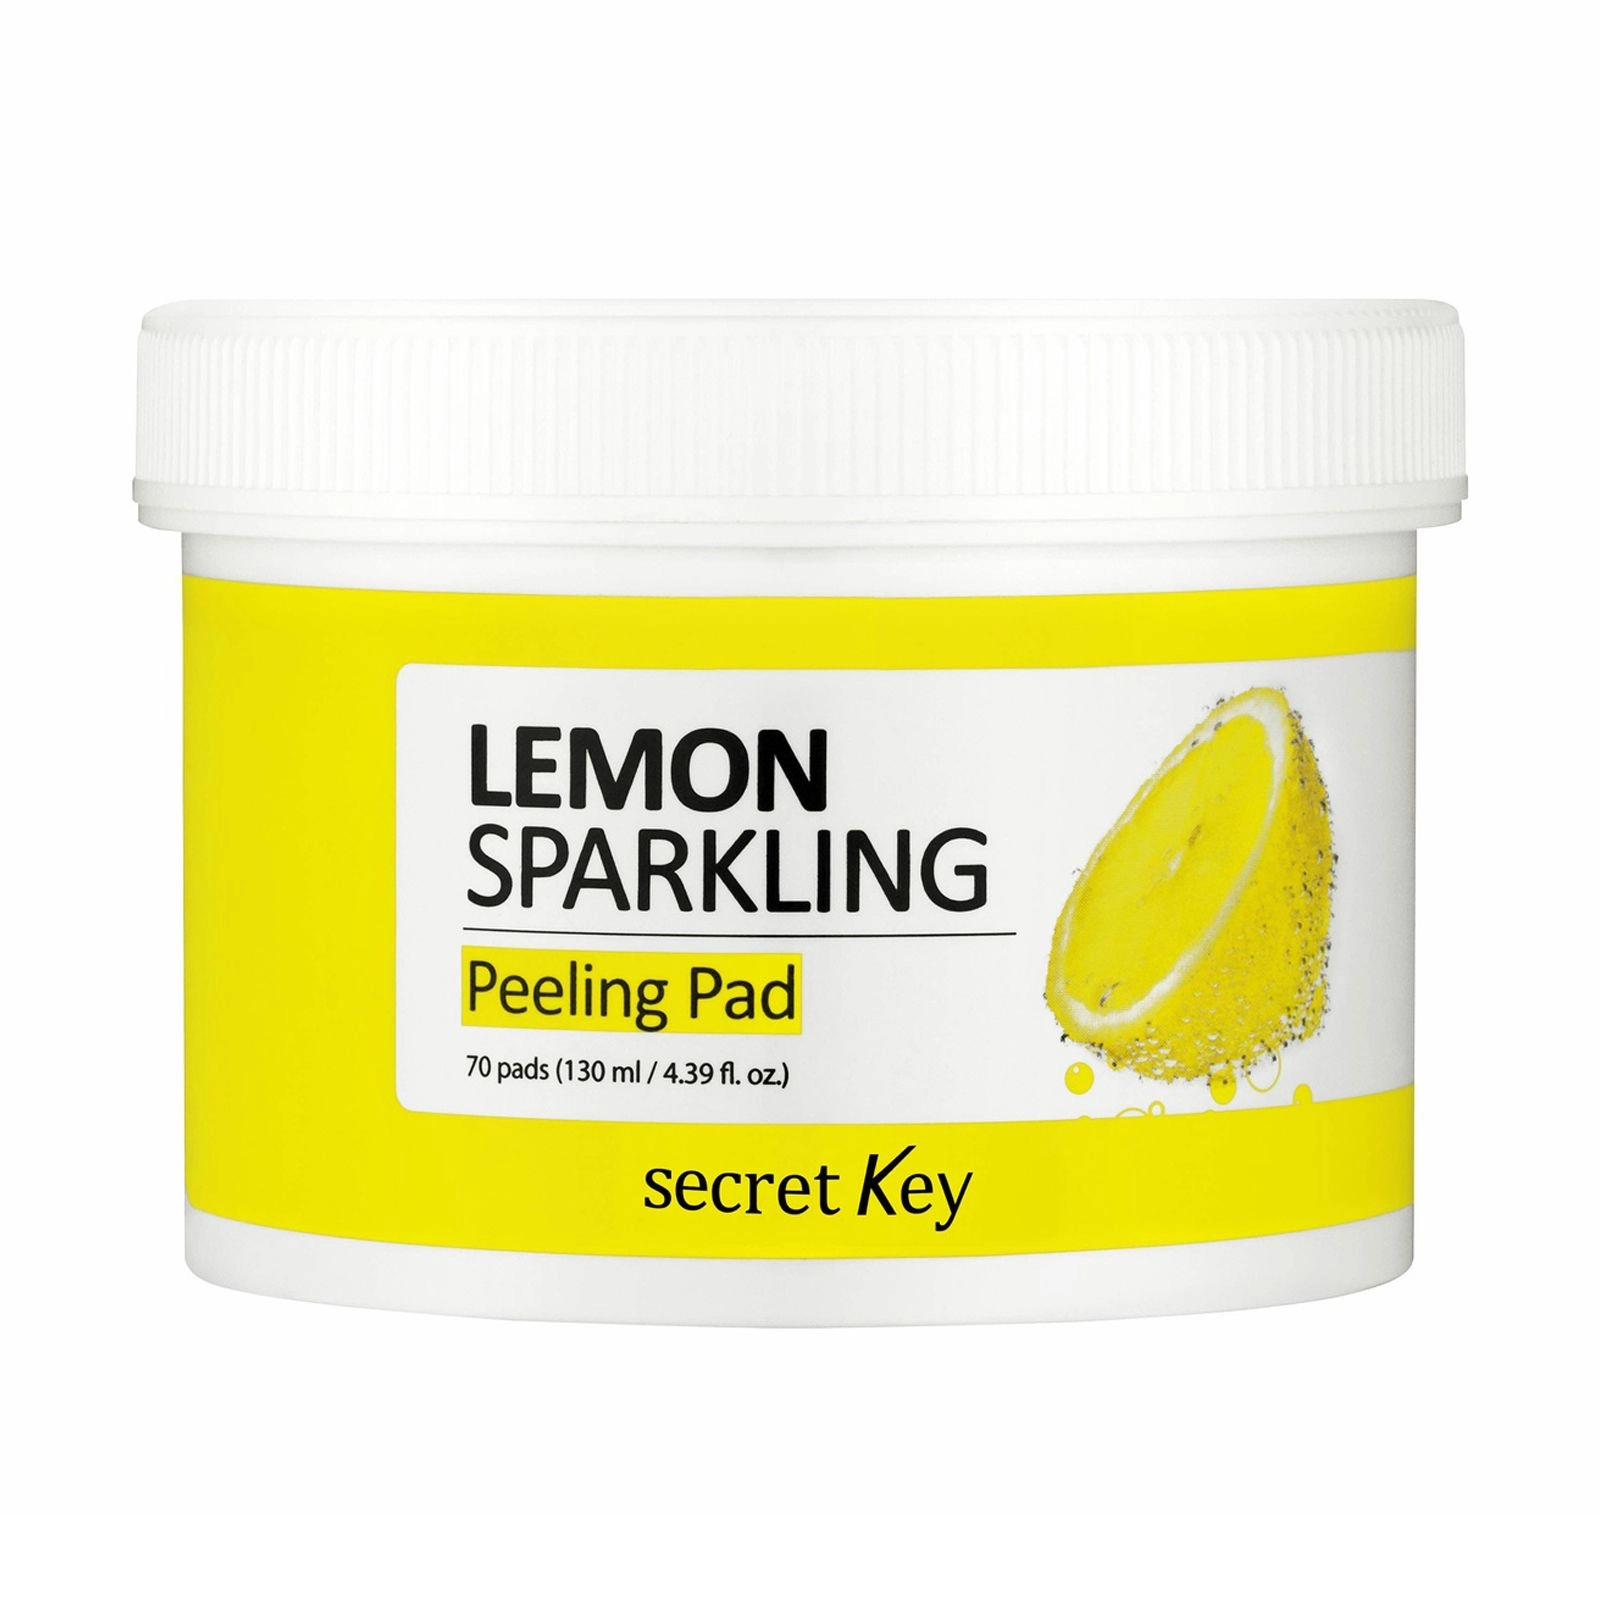 Secret Key Очищающие пилинг-диски для лица с лимонным соком Lemon Sparkling Peeling Pad, 70 шт - фото N1